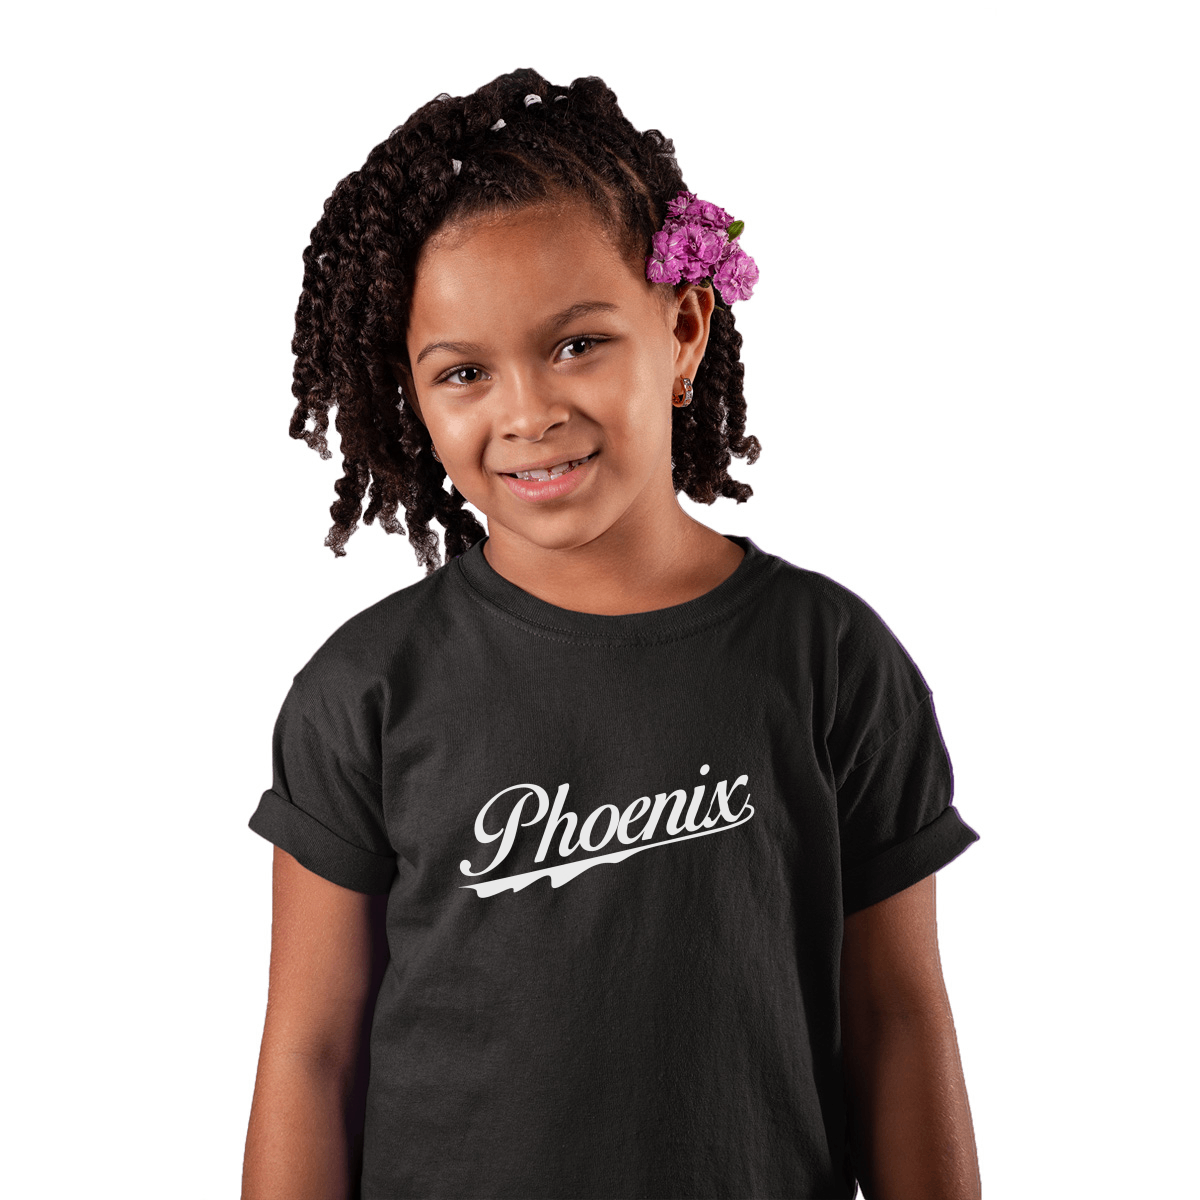 Phoenix Kids T-shirt | Black